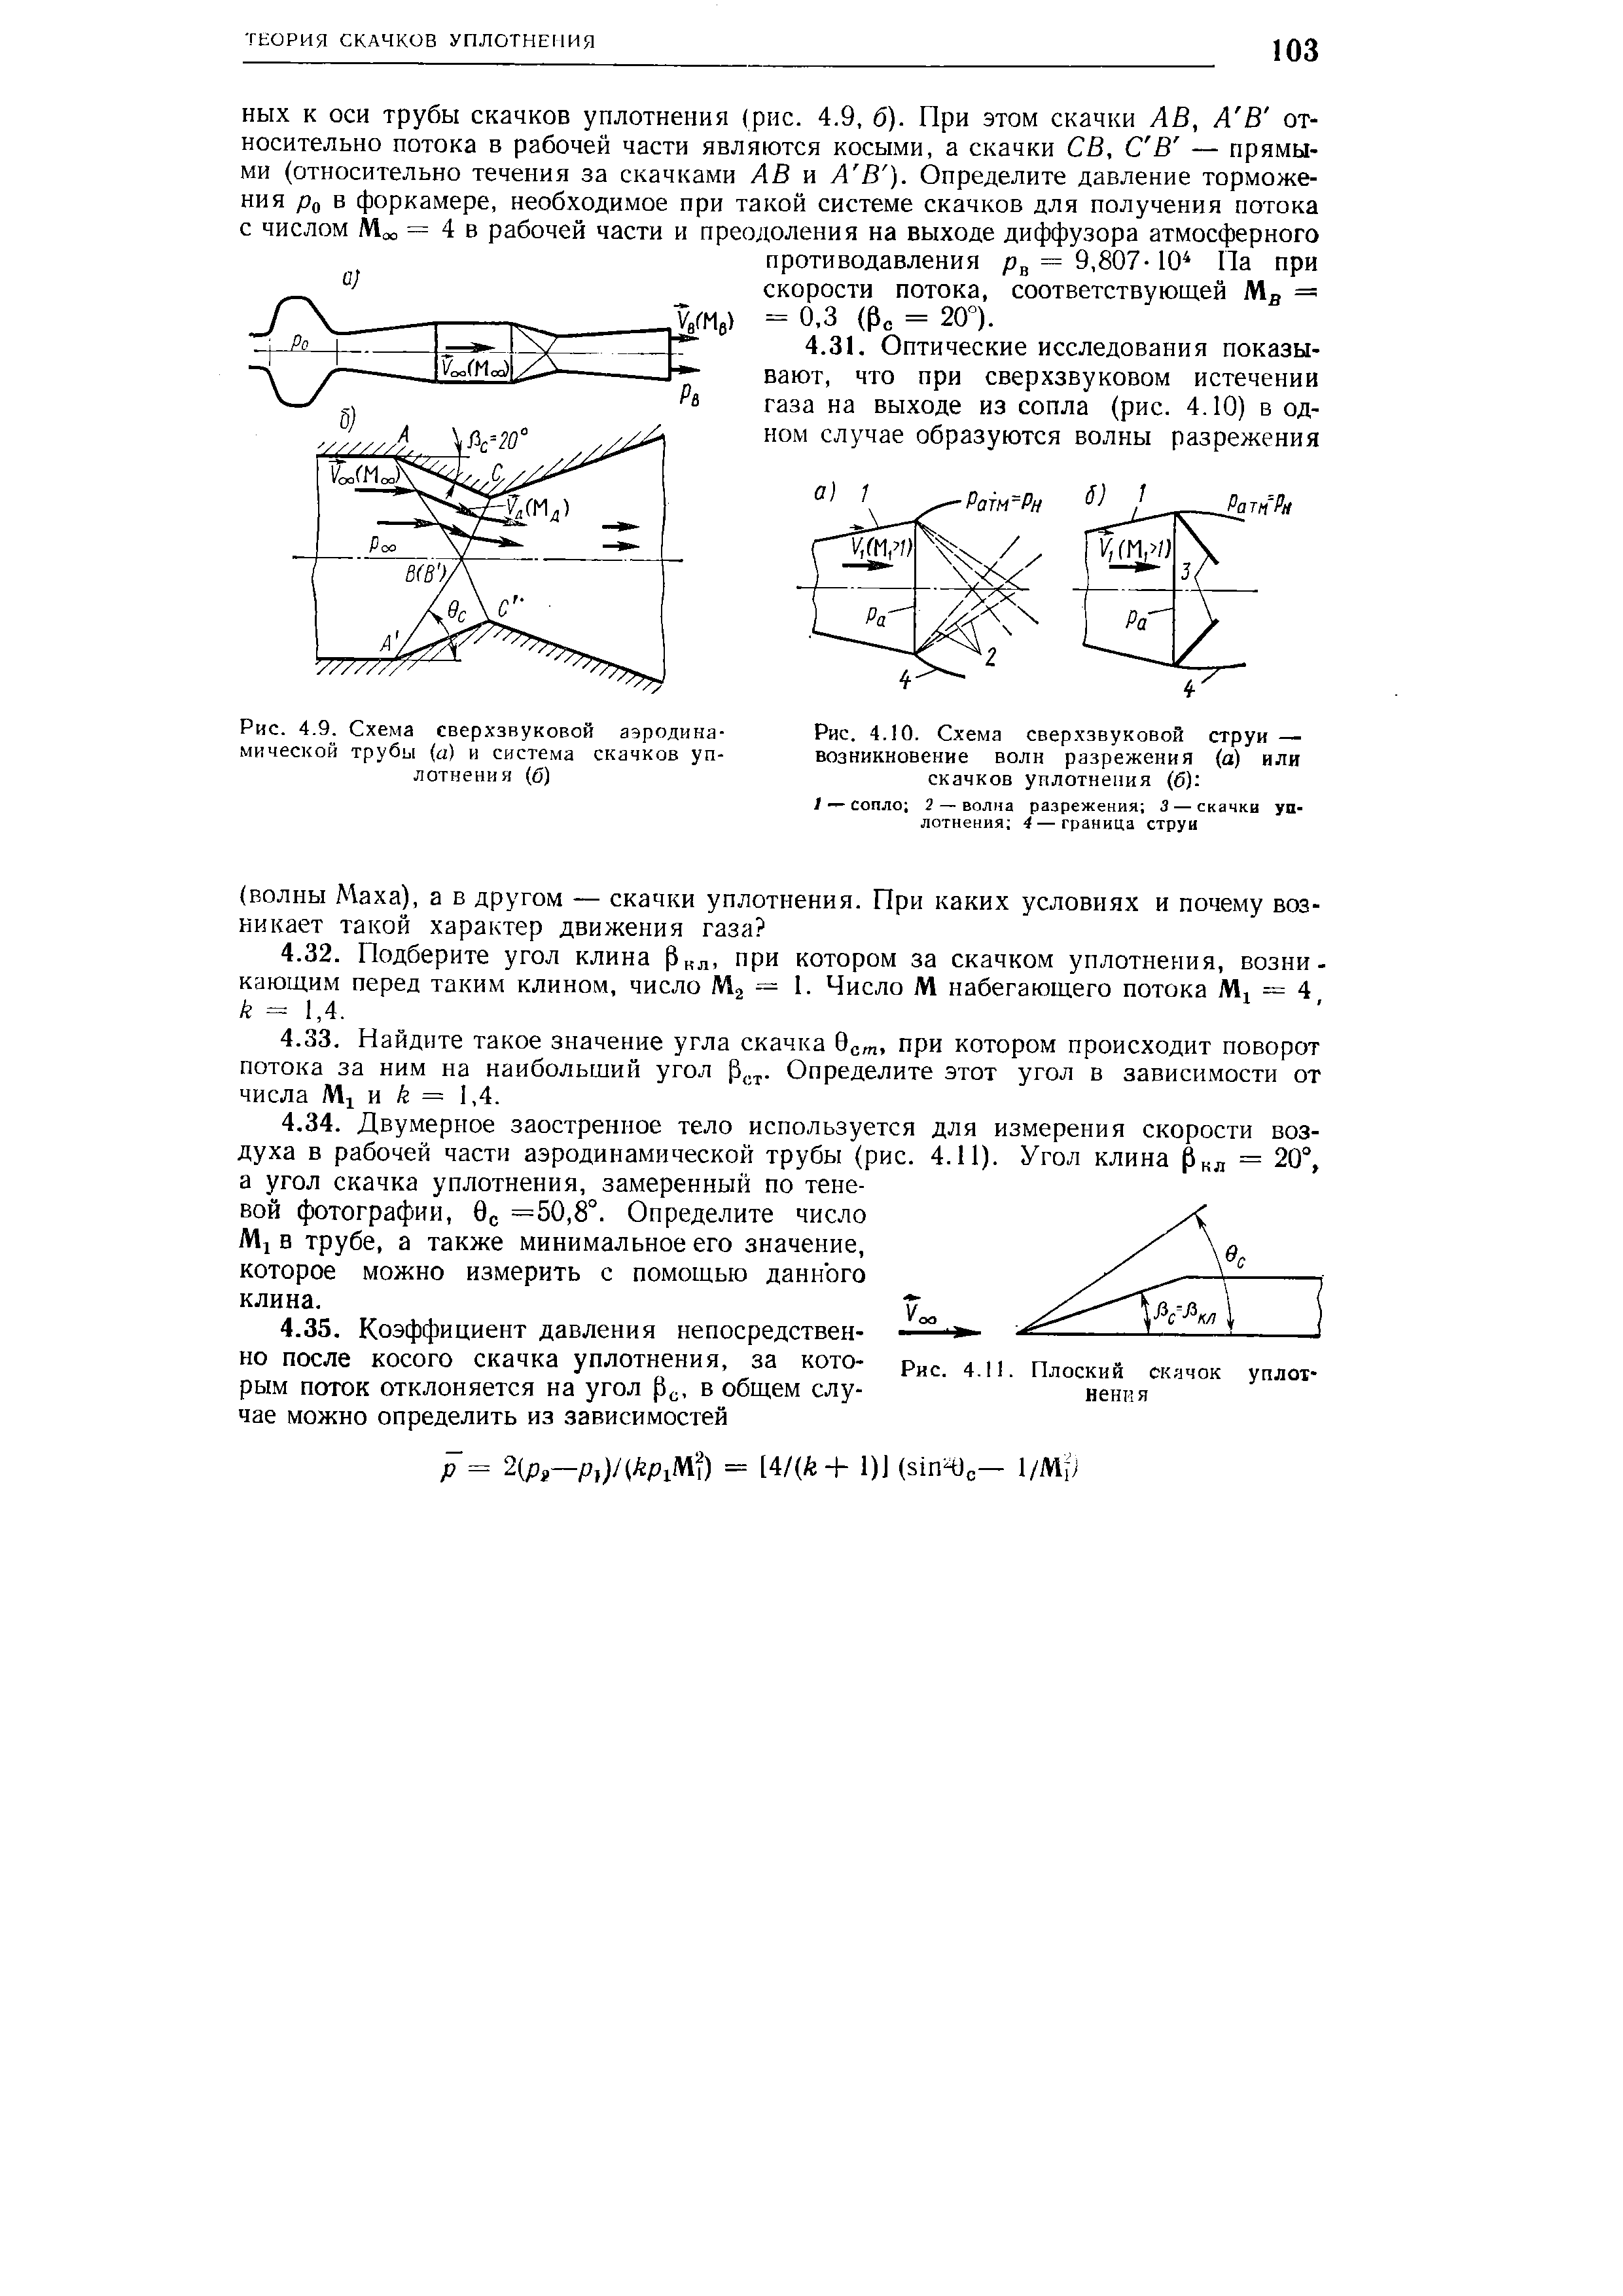 Рис. 4.9. Схема сверхзвуковой аэродинамической трубы (а) и система скачков уплотнения (б)
